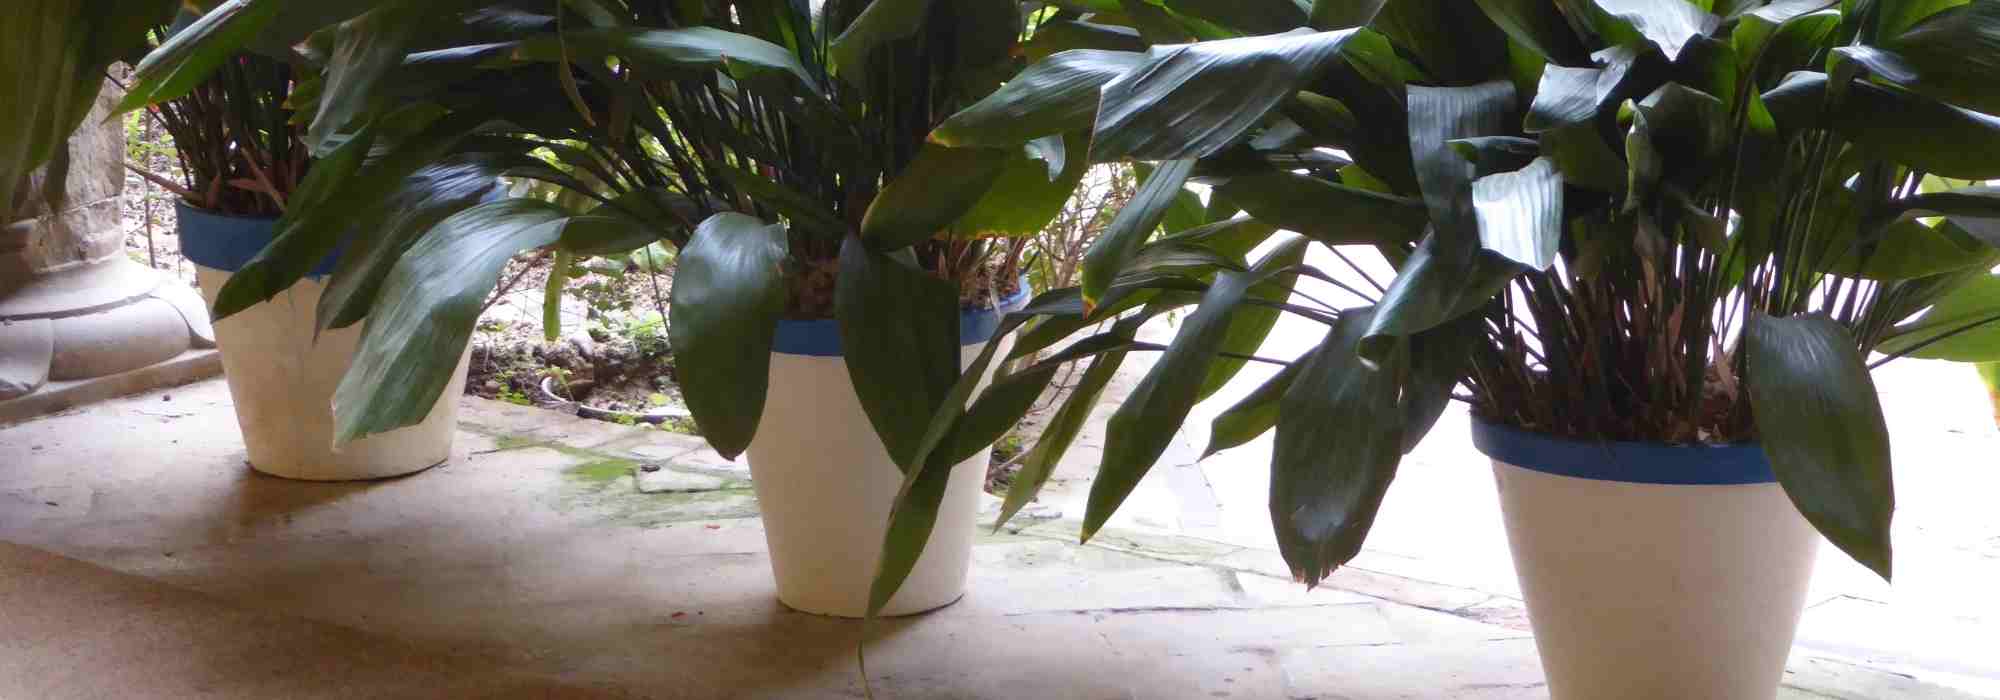 Pots de fleurs et jardinières en plastique